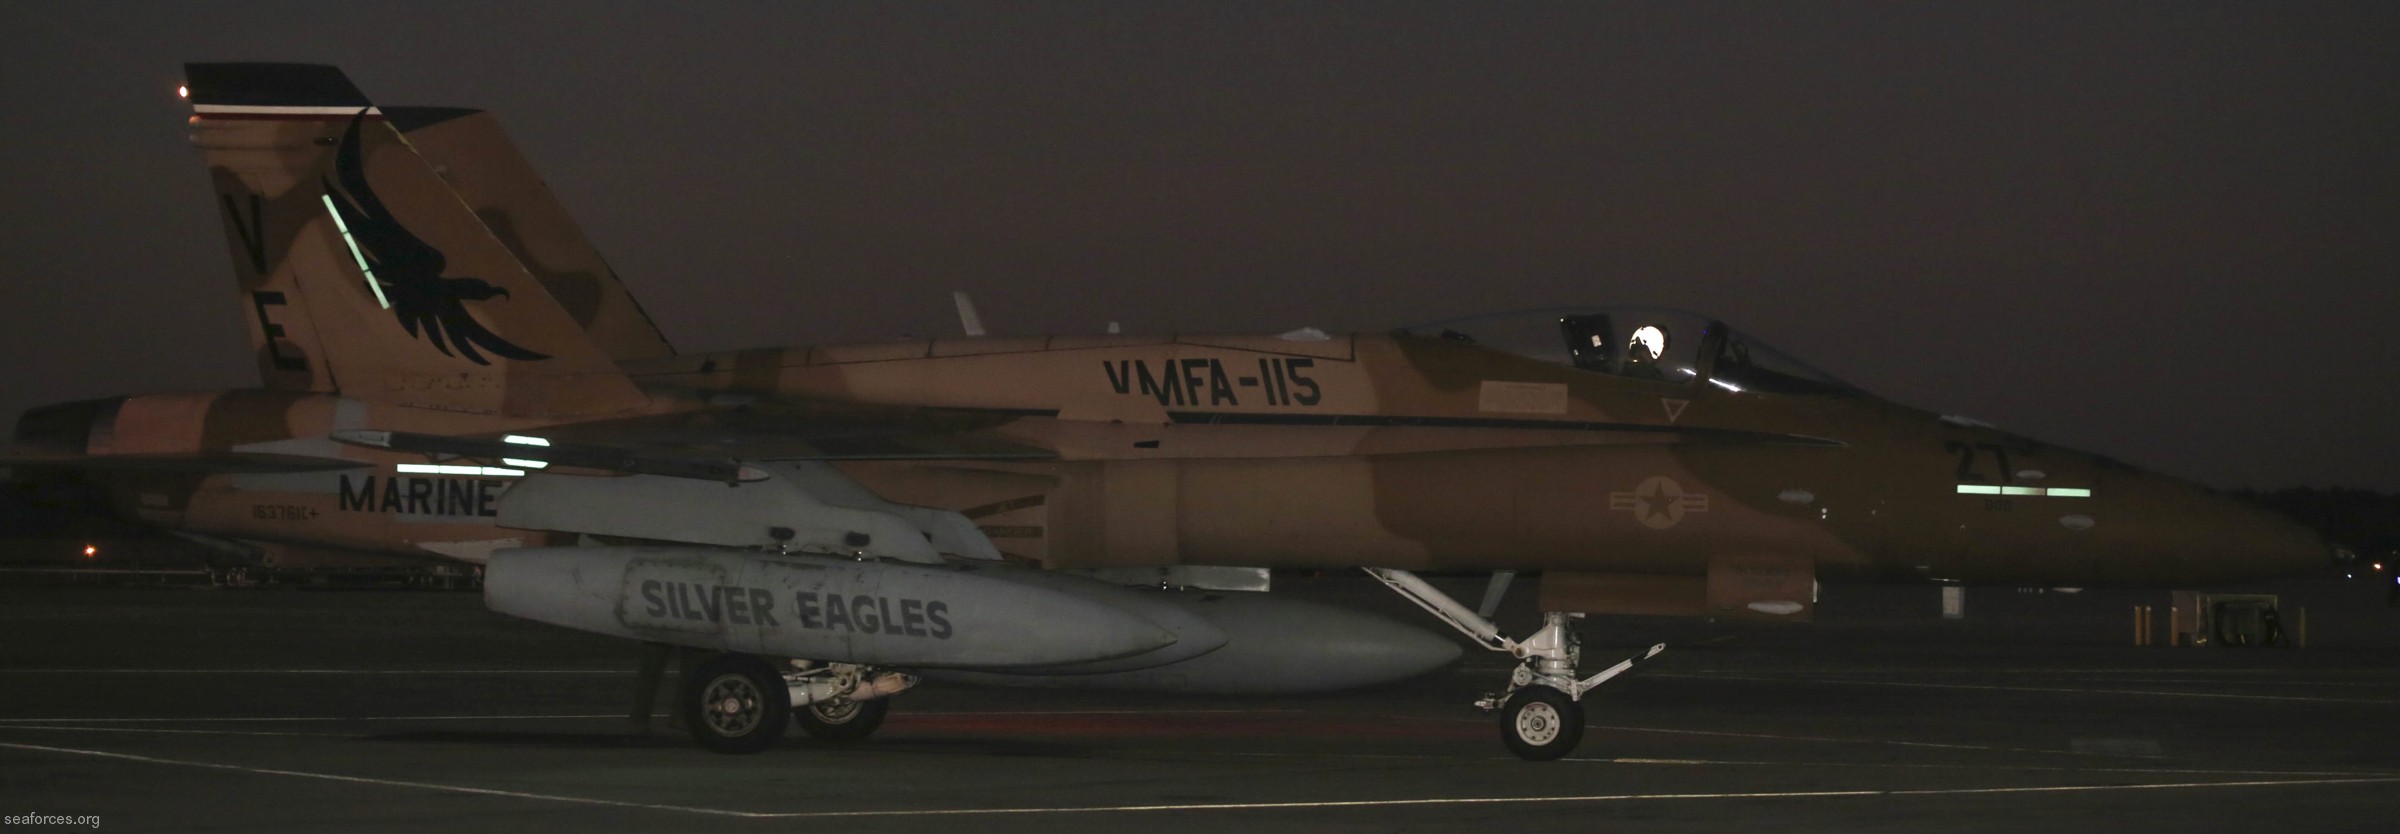 vmfa-115 silver eagles marine fighter attack squadron f/a-18a+ hornet 127